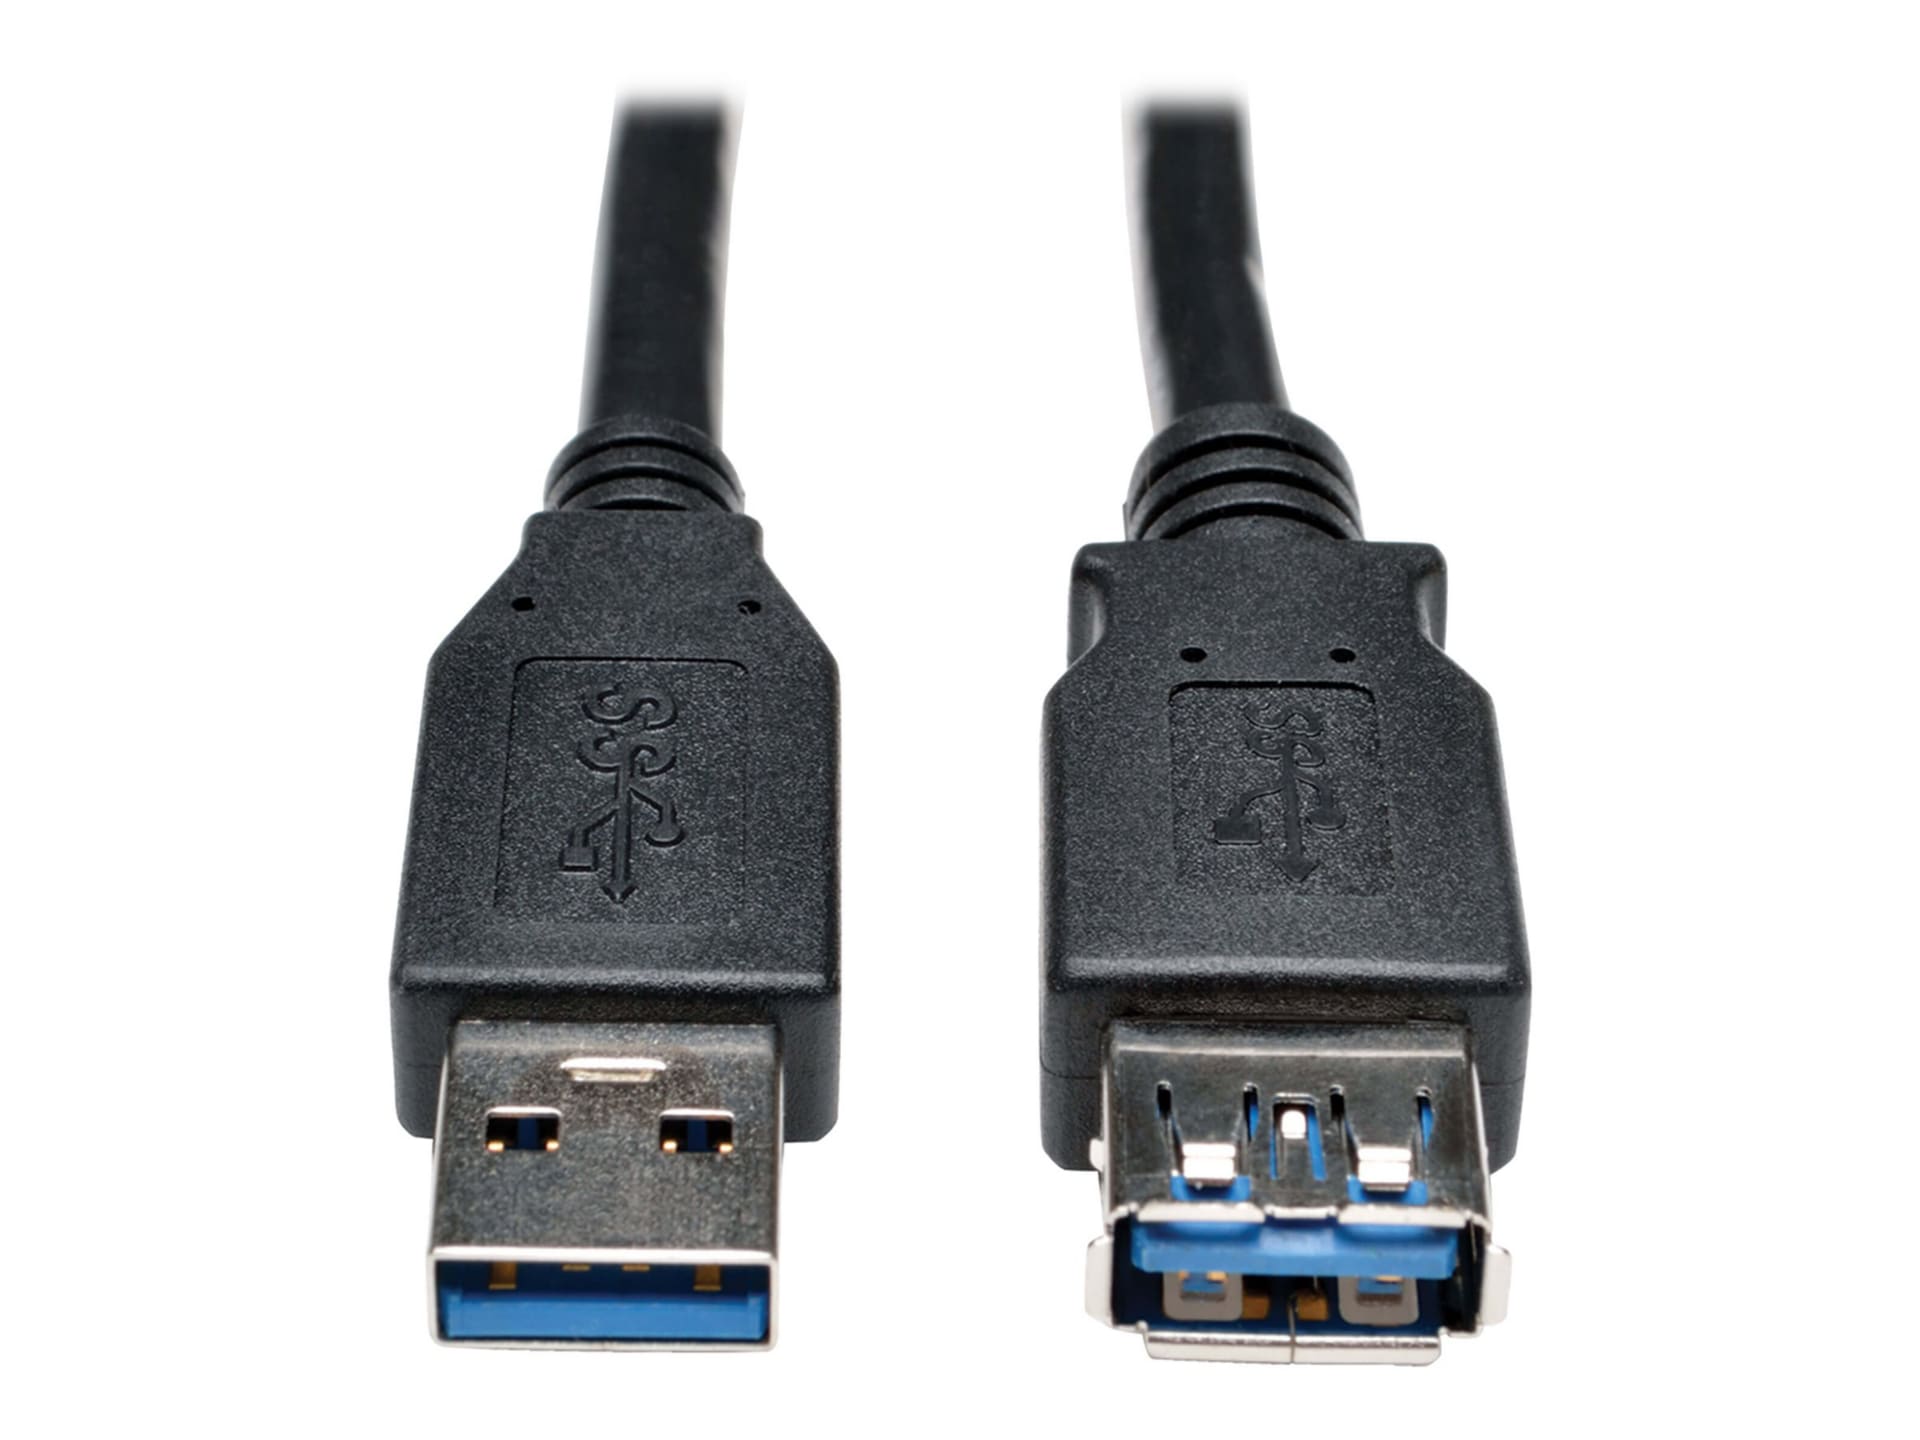 Eaton Tripp Lite Series USB 3.0 SuperSpeed Extension Cable - USB M/F, Black, 3 ft. (0.91 m) - USB extension cable - USB